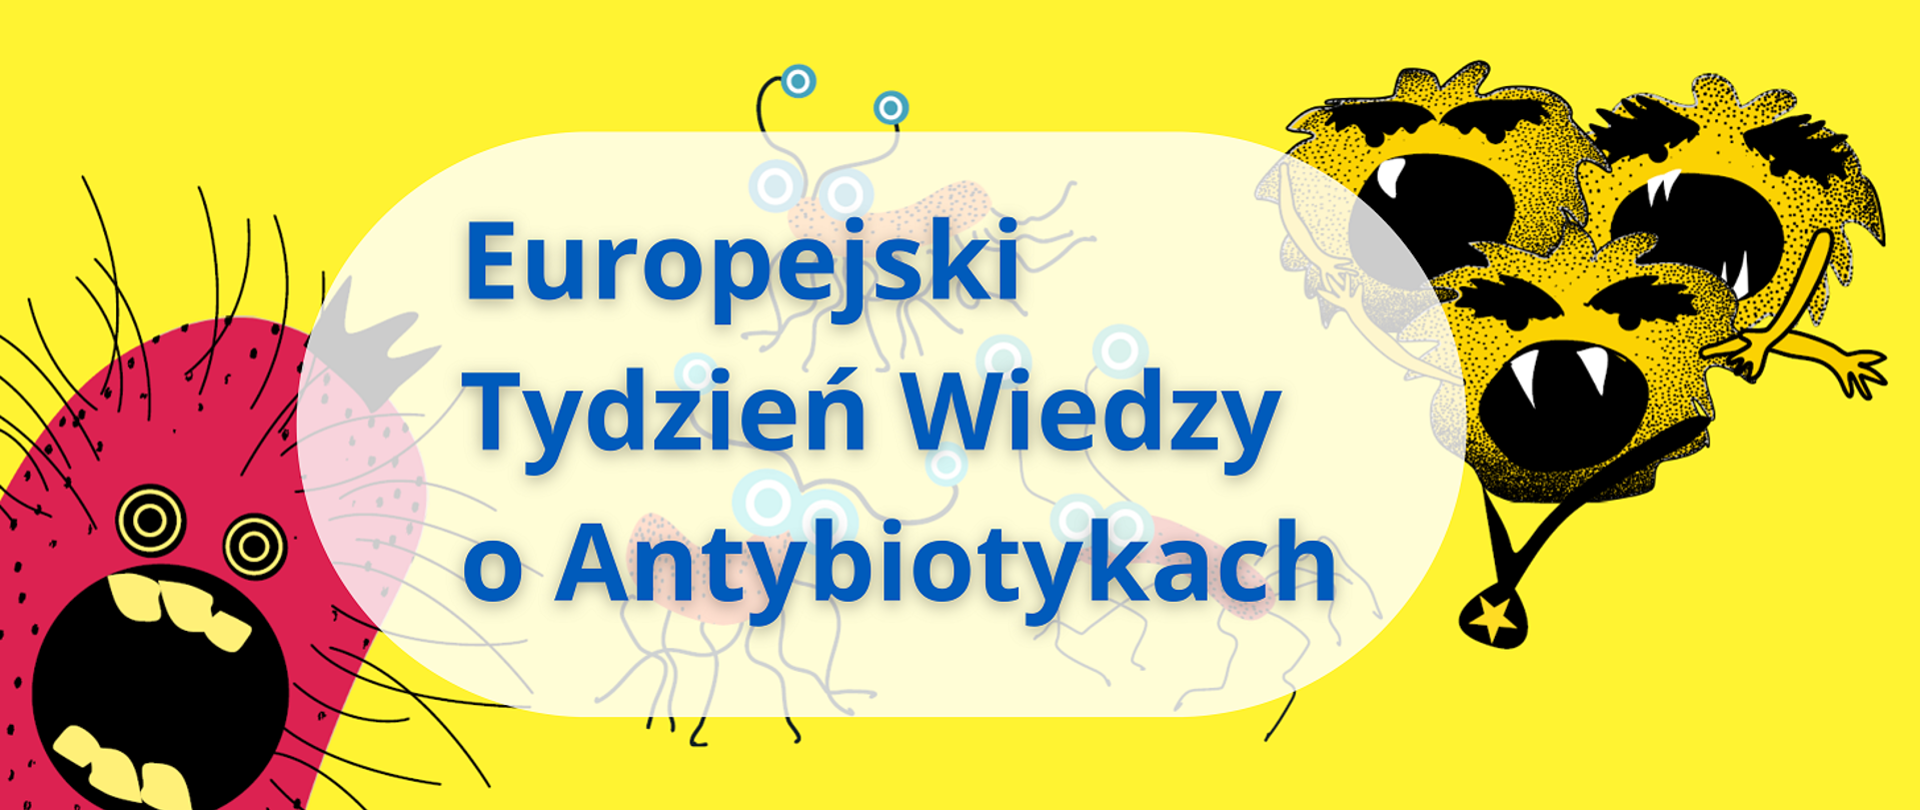 Europejski Tydzień Wiedzy o Antybiotykach